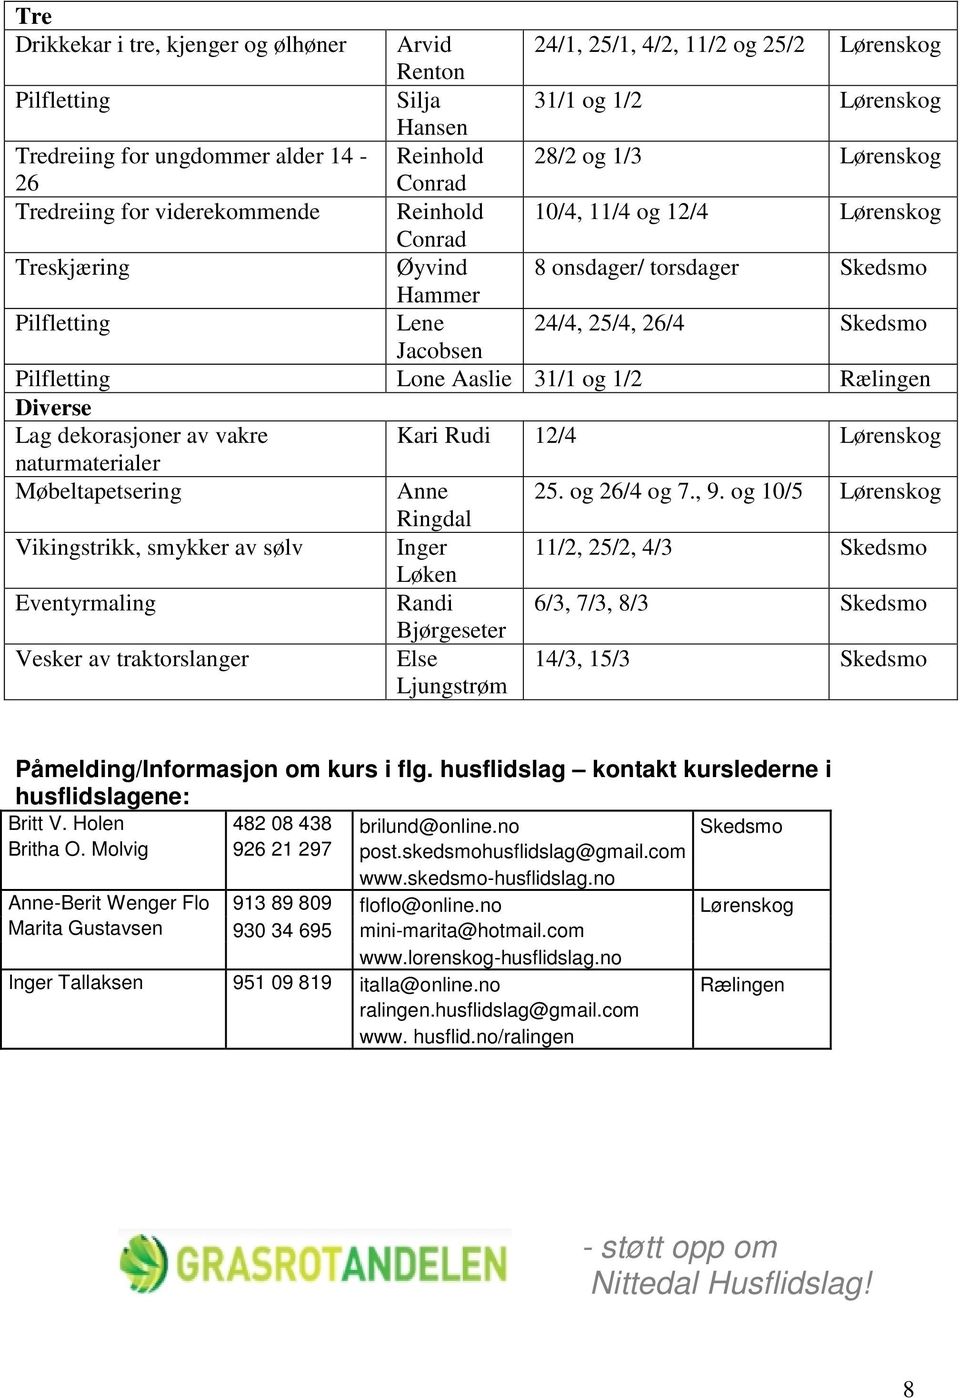 Jacobsen Pilfletting Lone Aaslie 31/1 og 1/2 Rælingen Diverse Lag dekorasjoner av vakre Kari Rudi 12/4 Lørenskog naturmaterialer Møbeltapetsering Anne 25. og 26/4 og 7., 9.